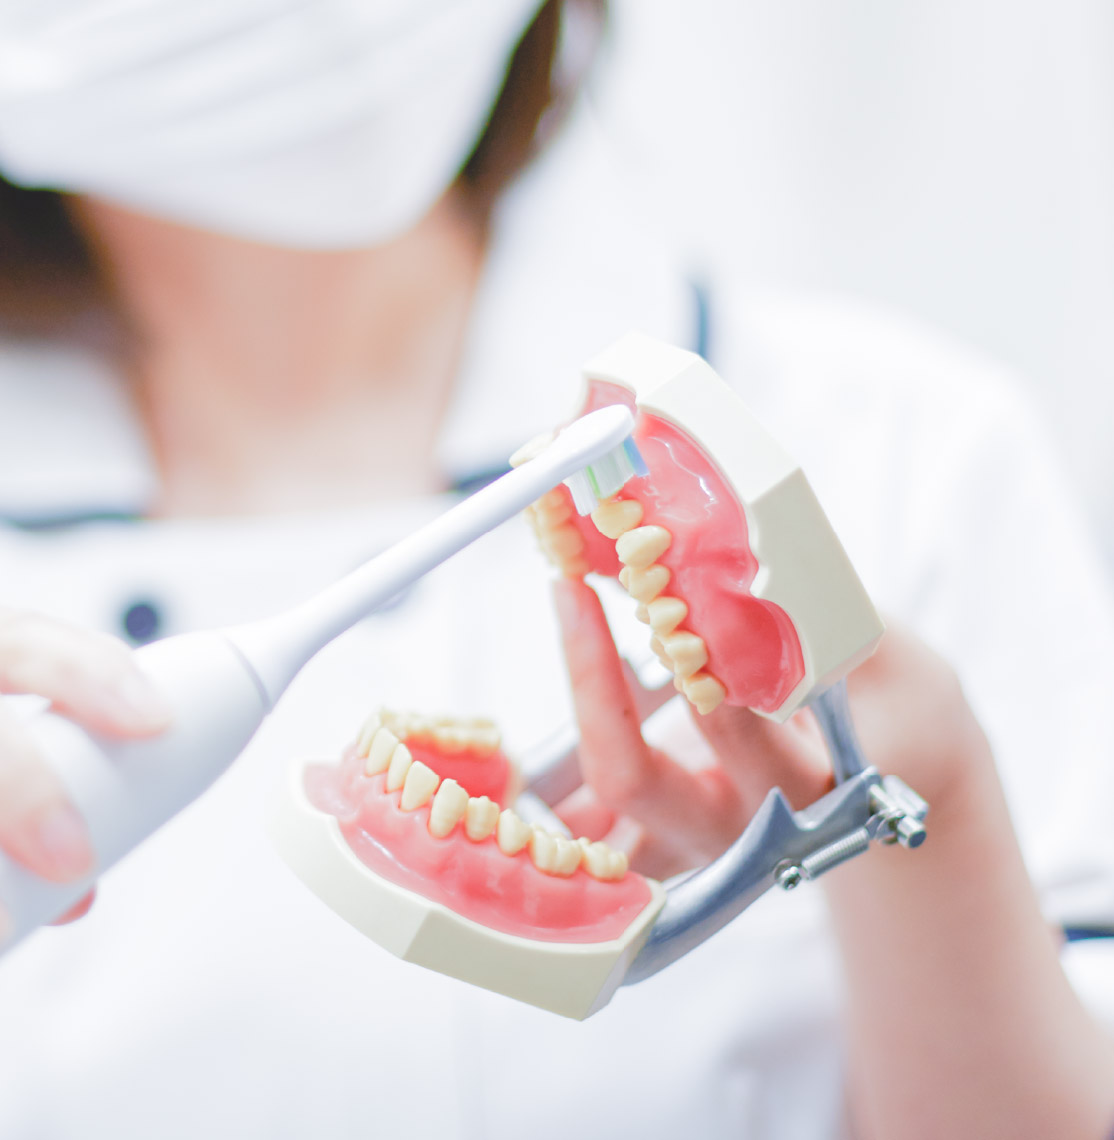 歯周病は全身に影響する慢性的な炎症で、循環器疾患に大きく影響します。